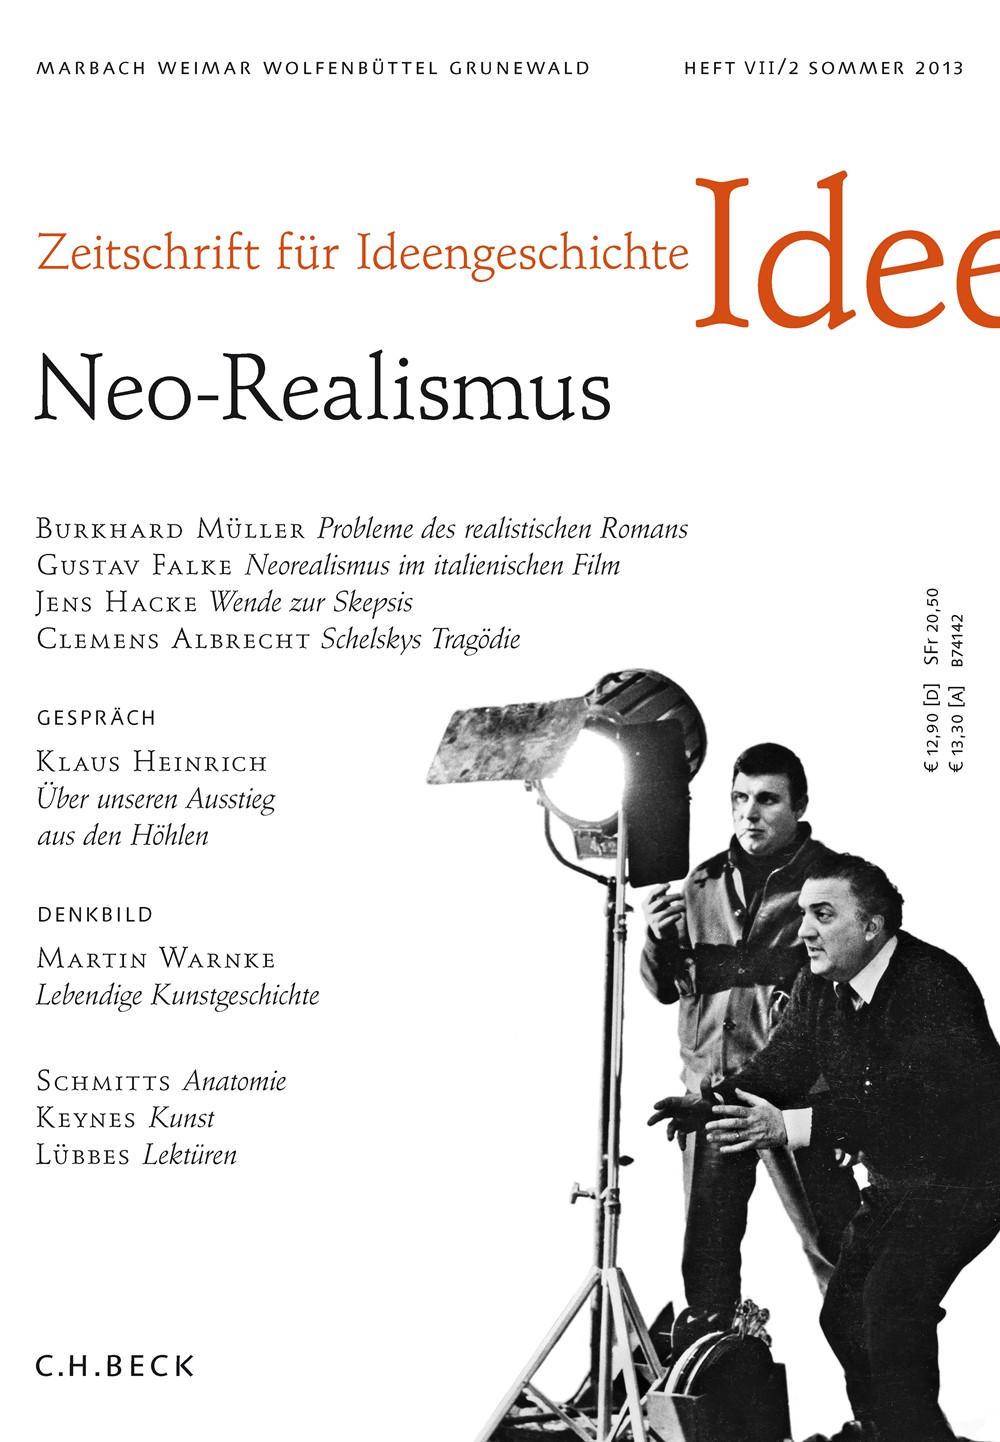 cover of Heft VII/2 Sommer 2013